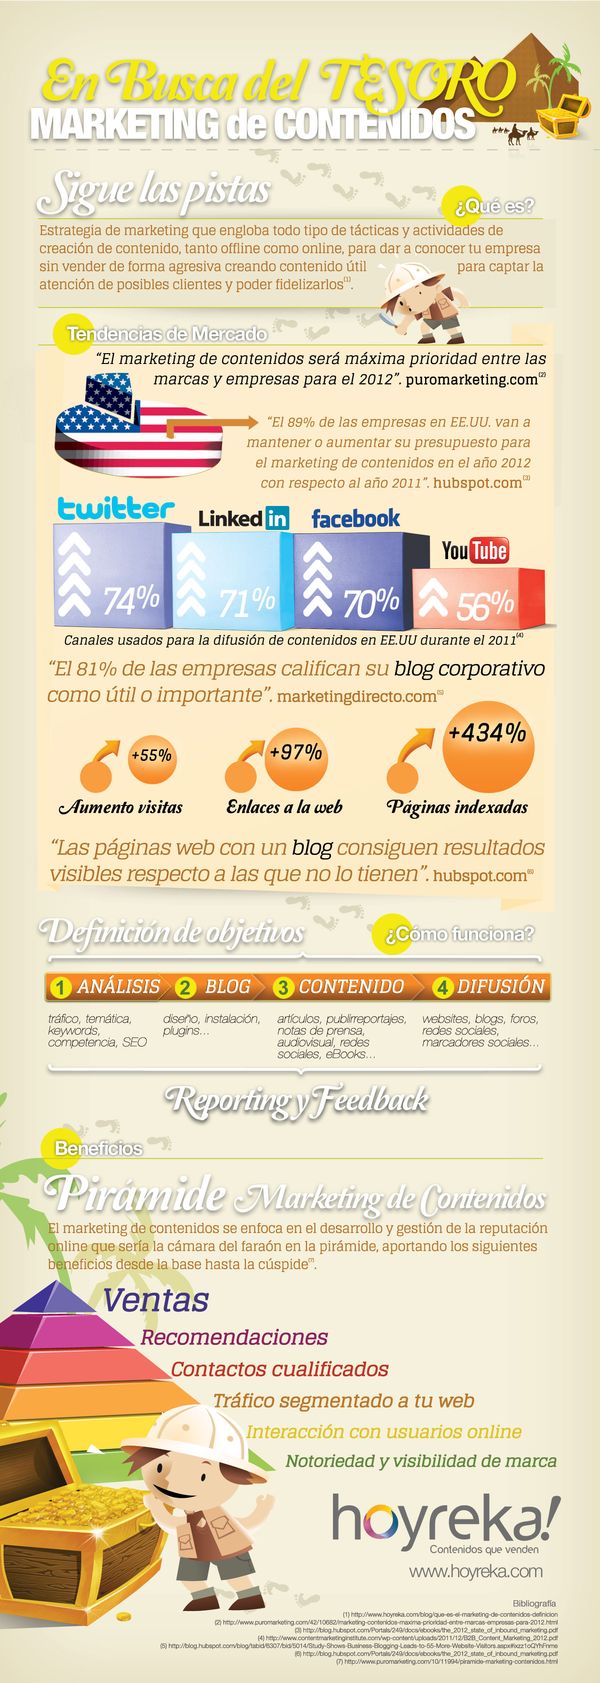 Marketing de contenidos, aspectos clave e infografía en español